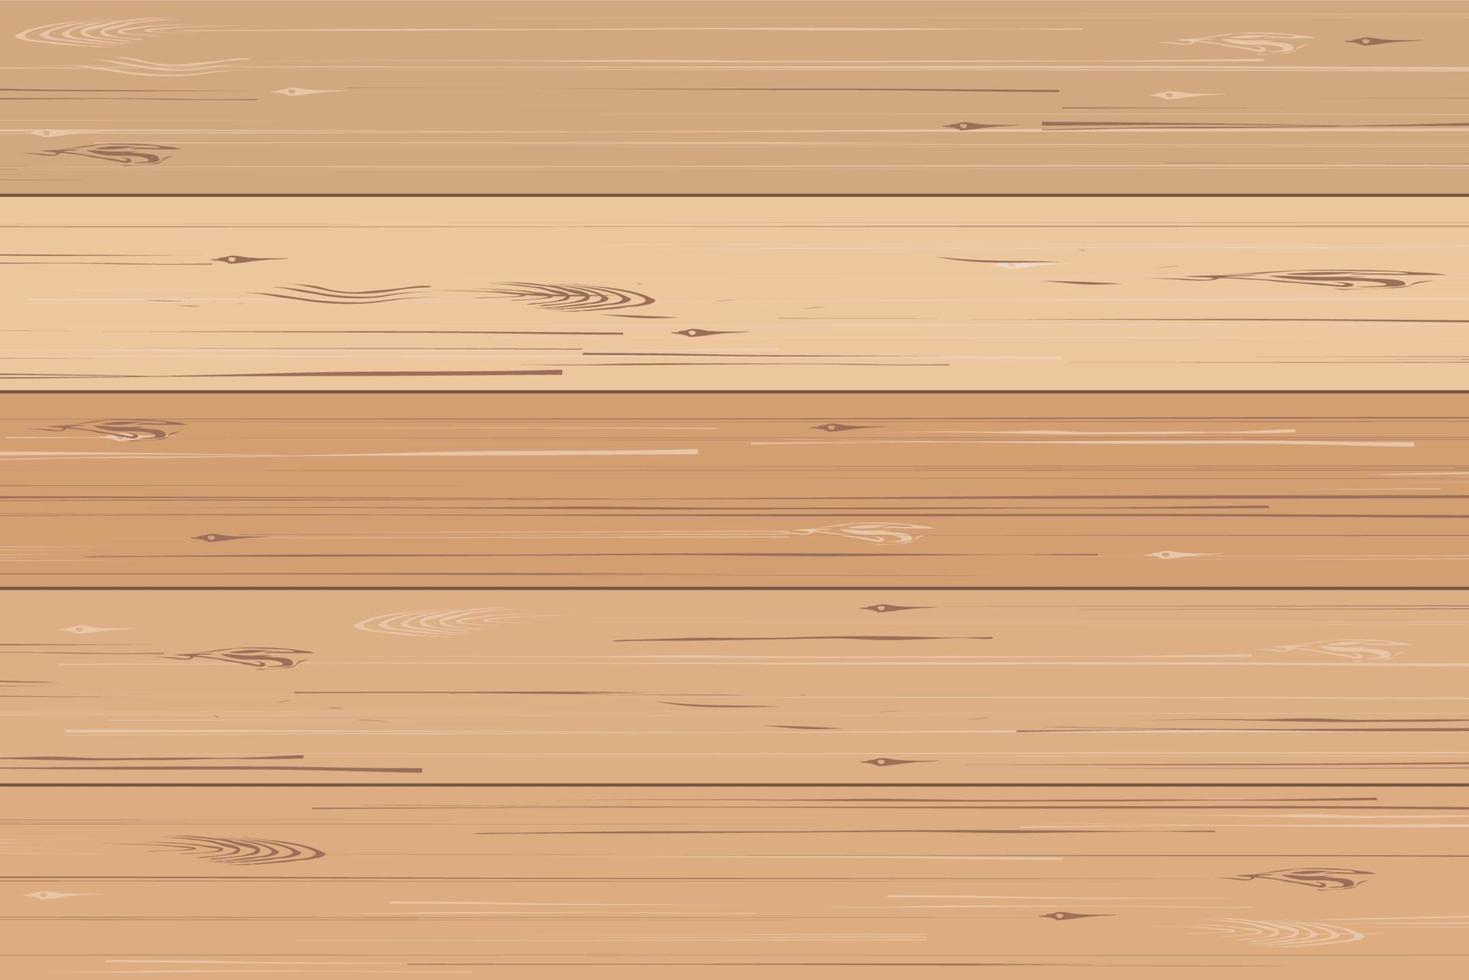 patrón de madera y textura de fondo. vector. vector